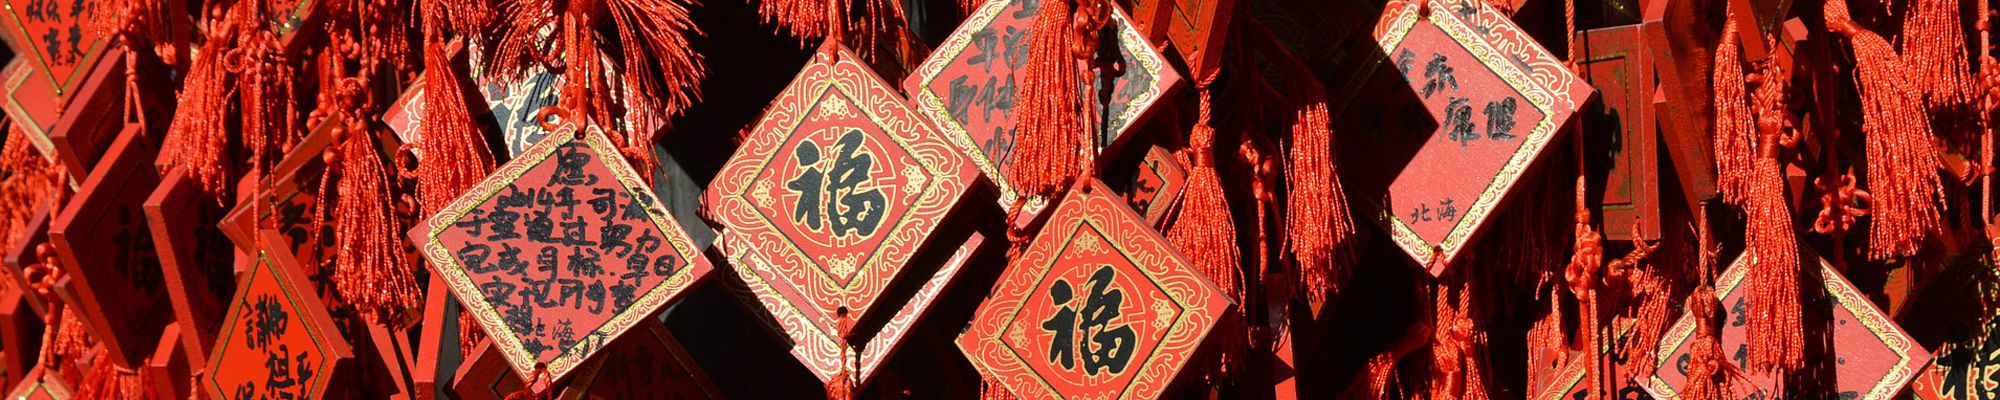 chinese new year prayers